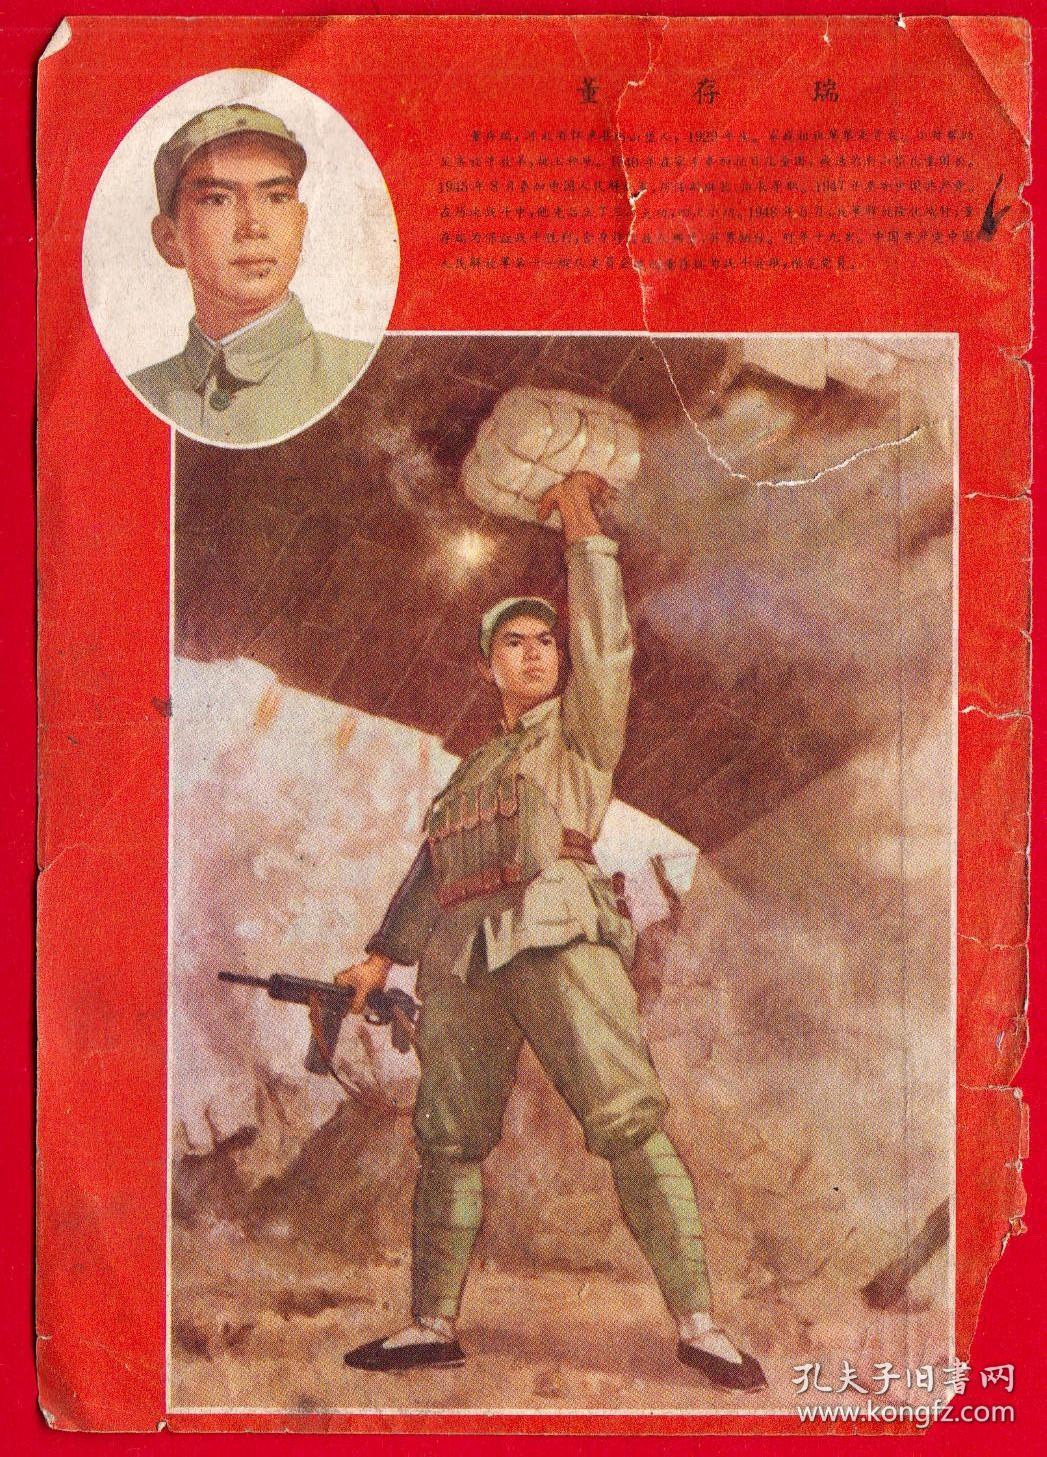 中国1974期刊画-《华北民兵》期刊画片-董存瑞英雄烈士--背图照片敢于